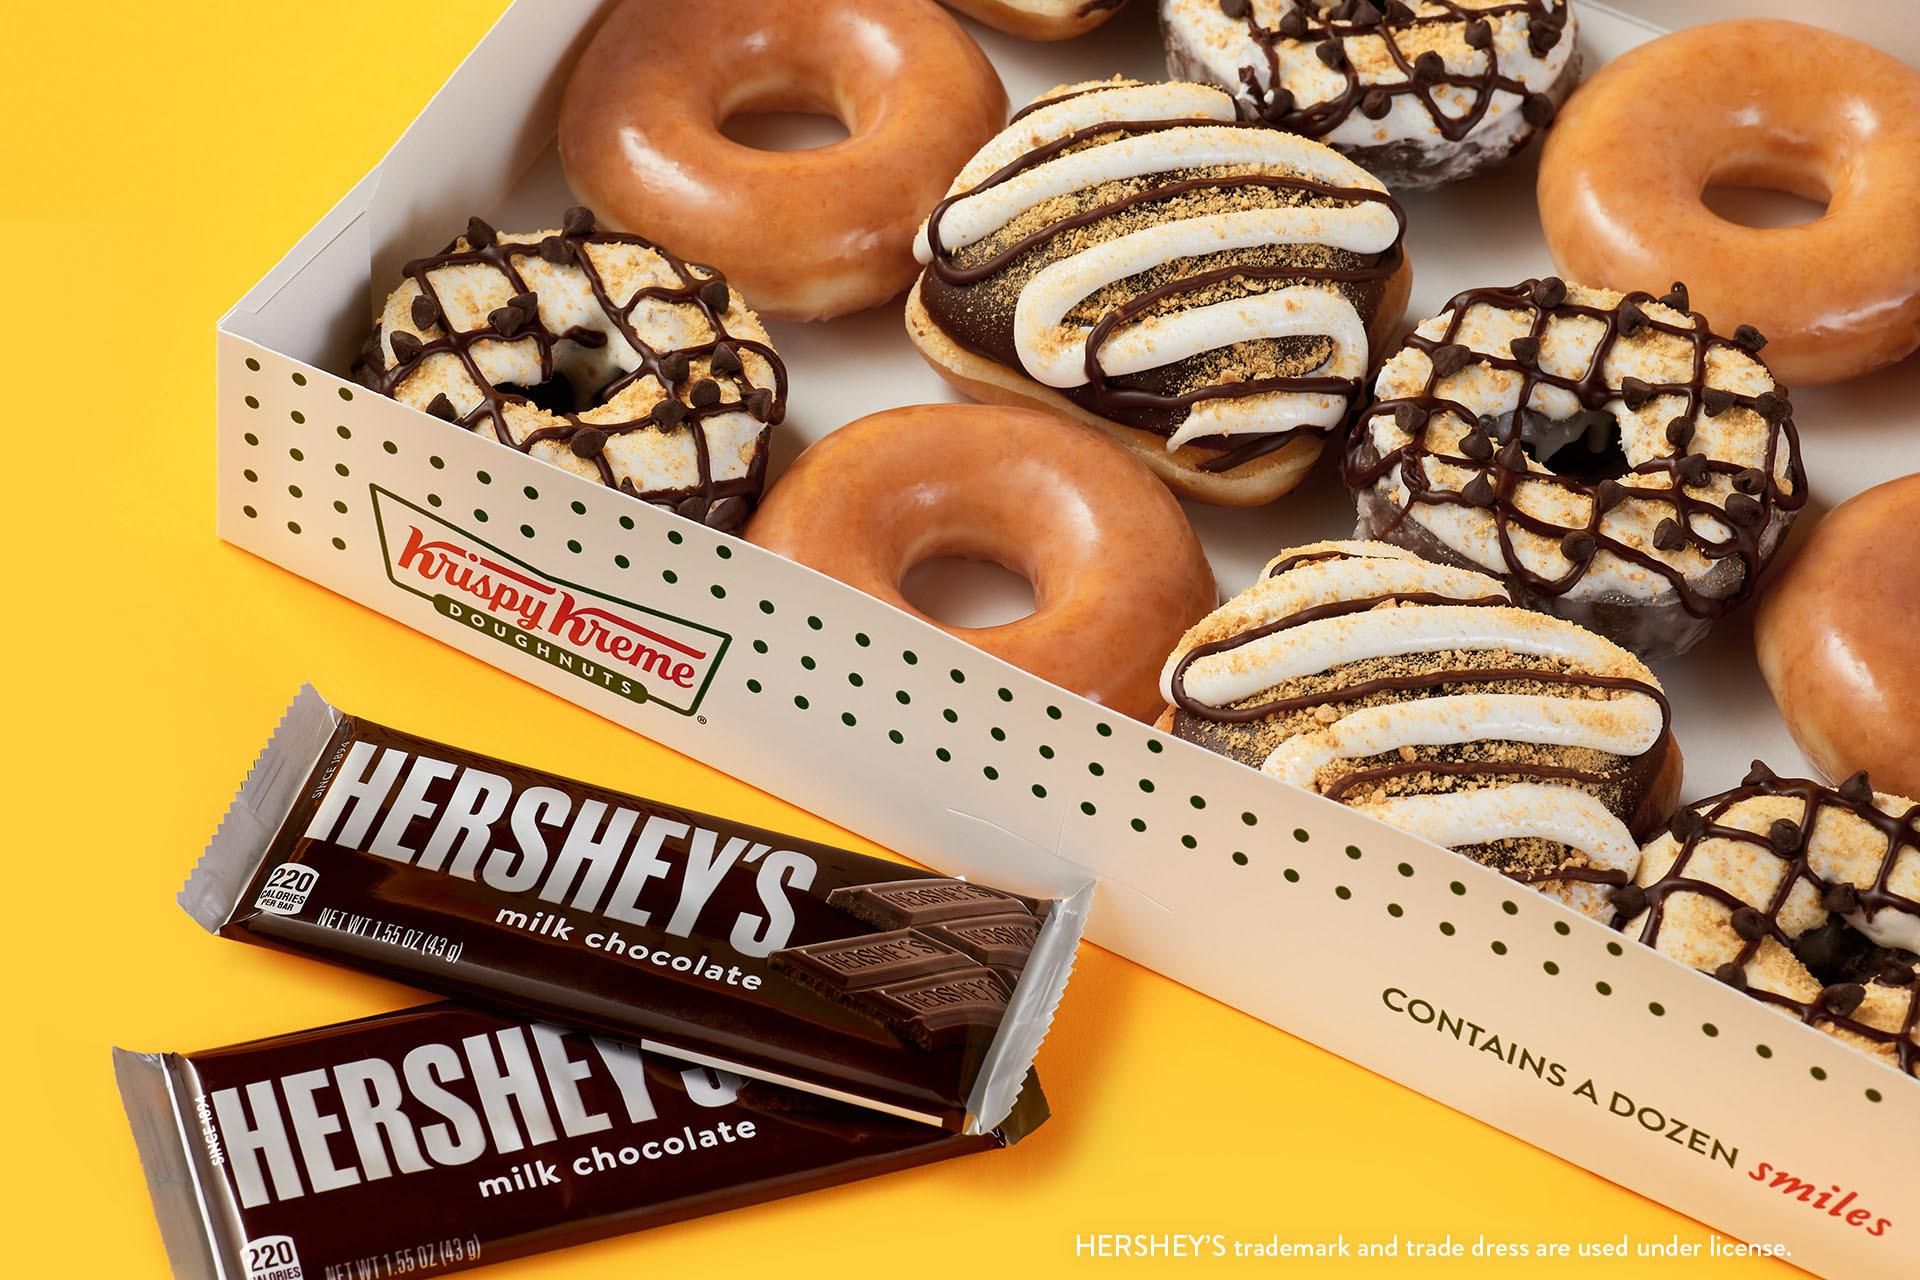 Krispy Kreme is releasing Hershey's s'mores doughnuts